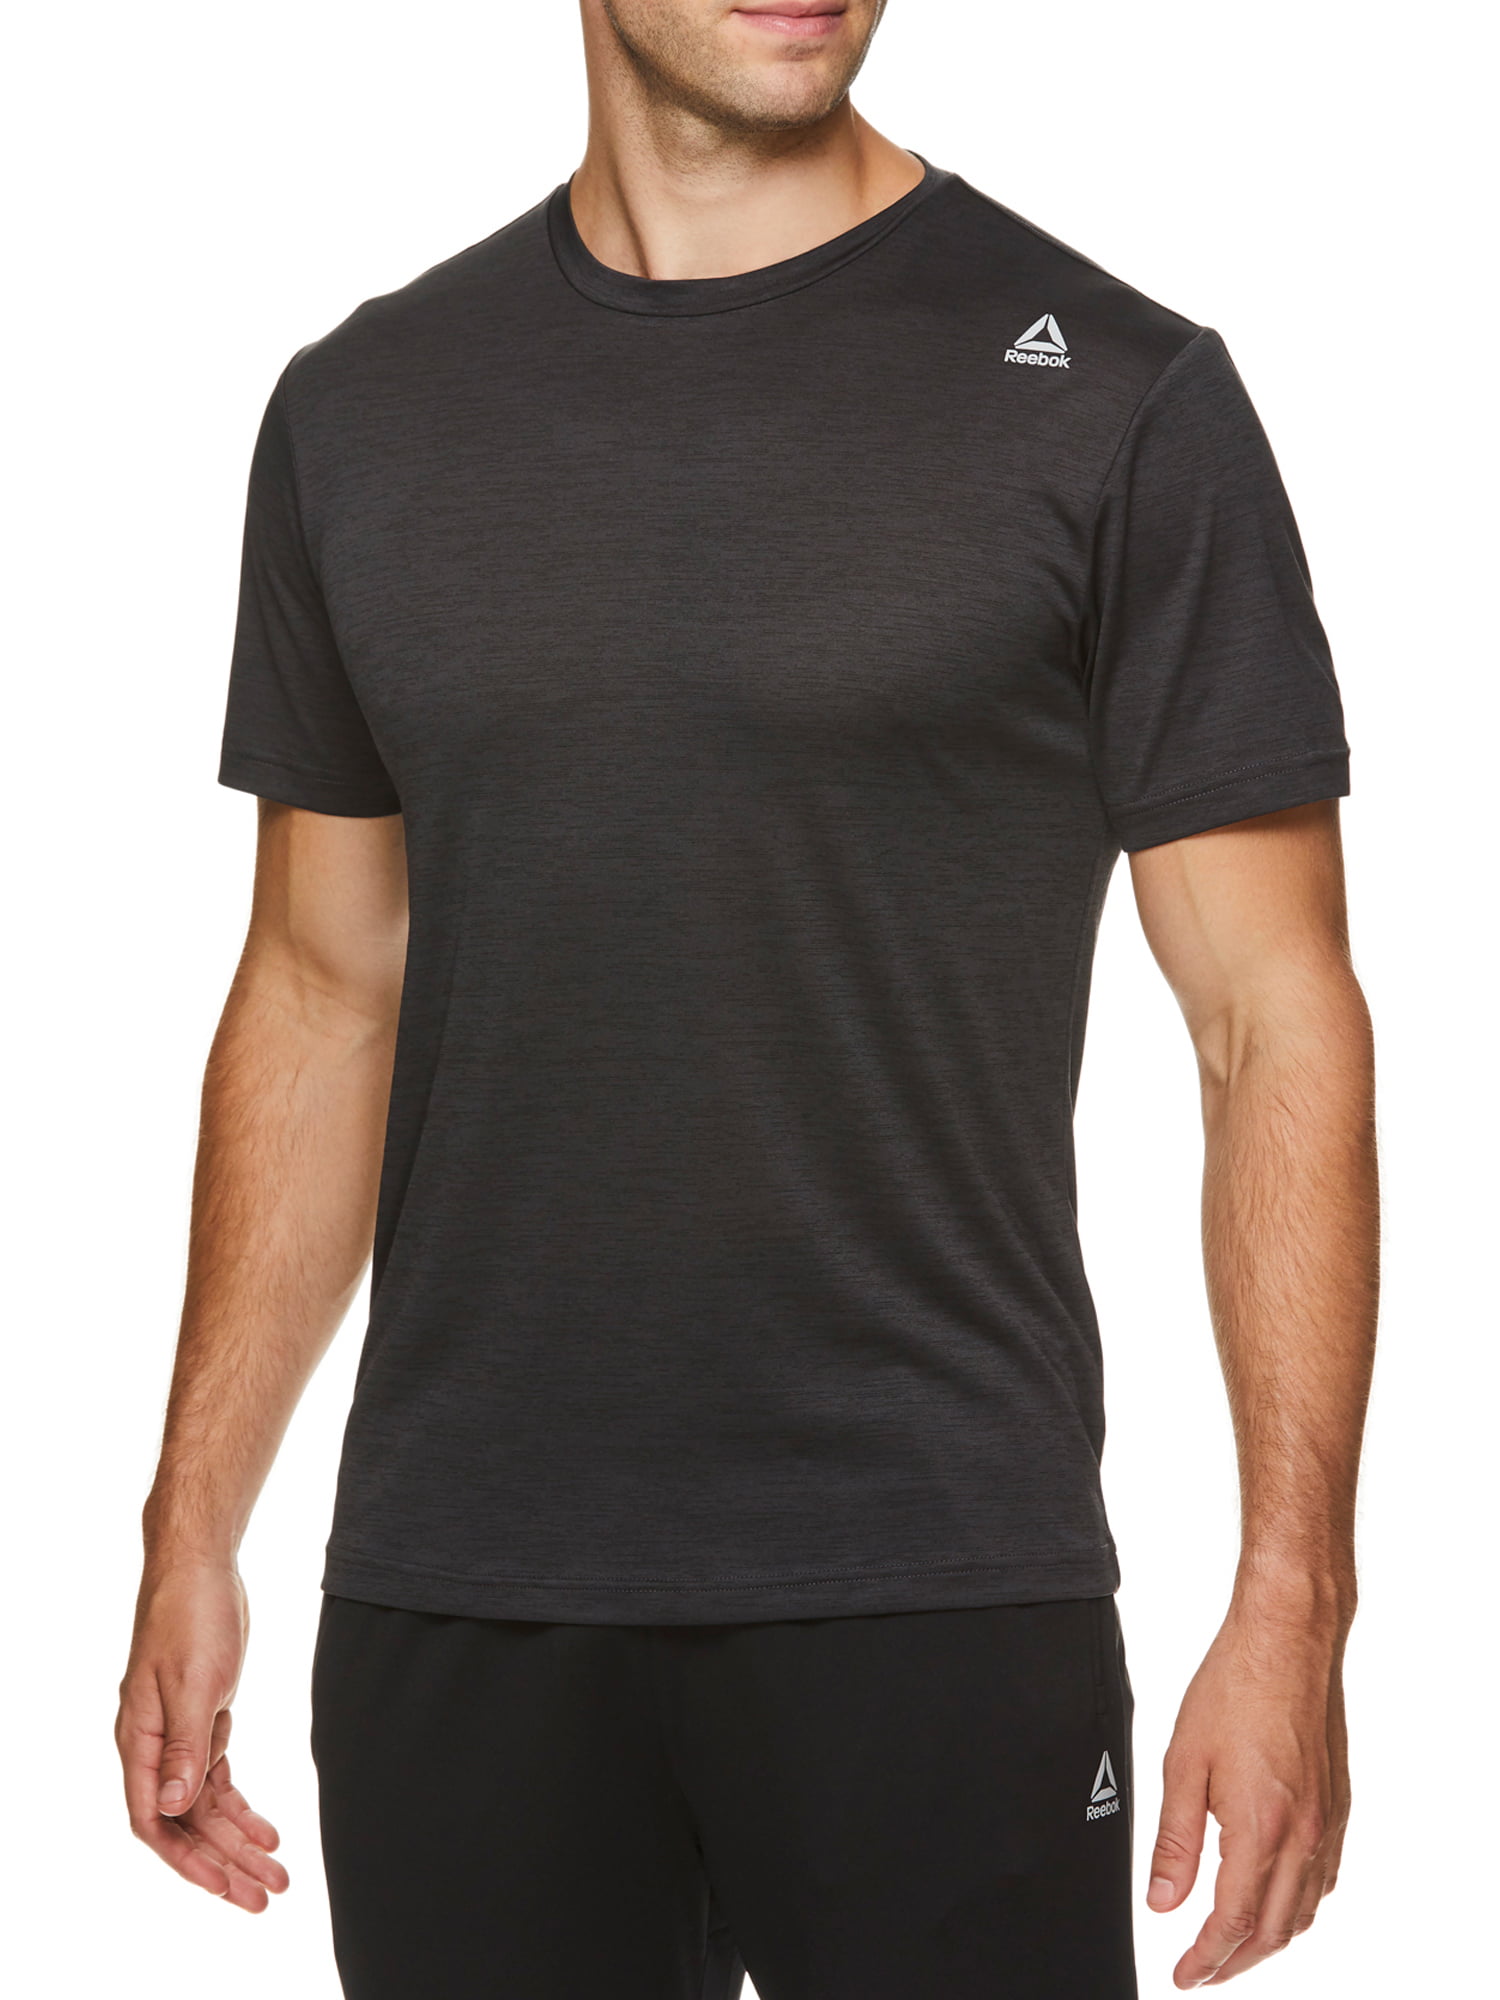 Reebok Men's Dash Short Sleeve T-Shirt - Walmart.com